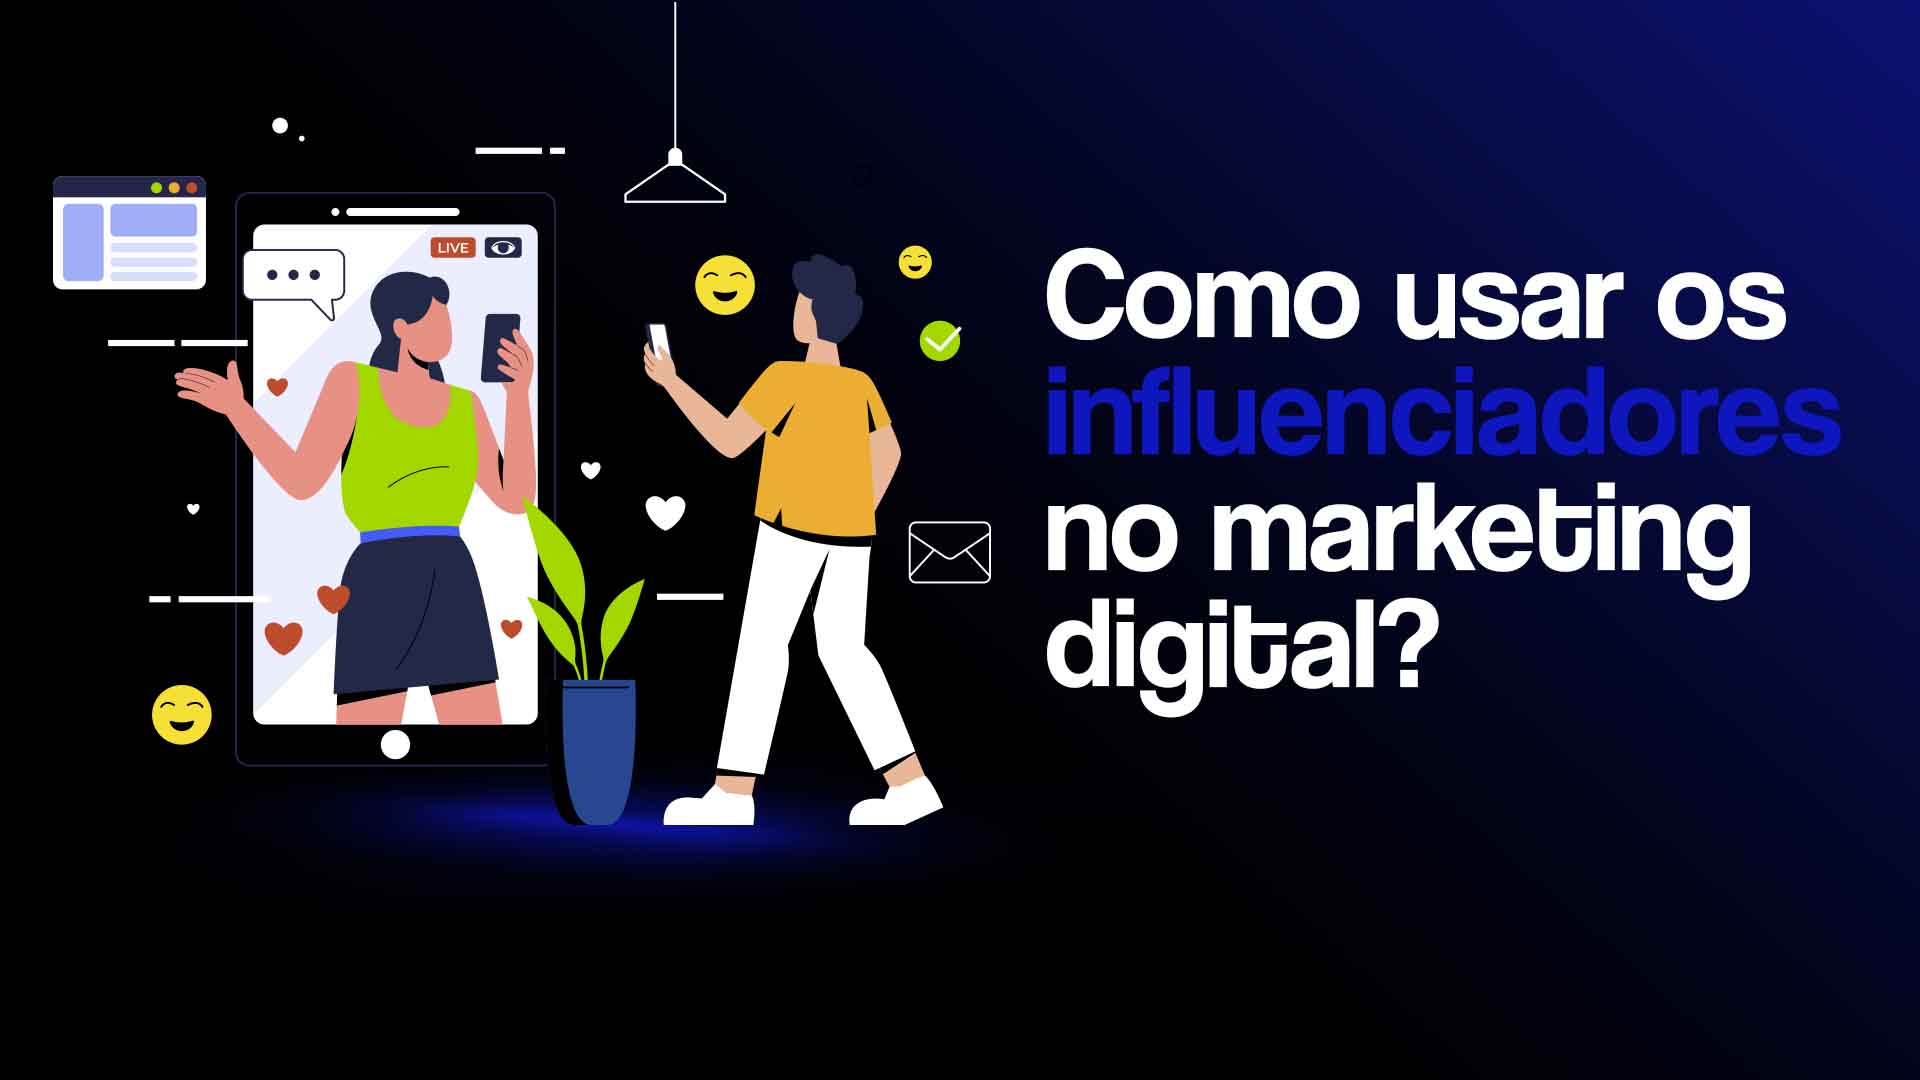 Ilustração mostrando pessoa interagindo no celular com um influenciador digital e o seguinte texto: Como usar os influenciadores no marketing digital?